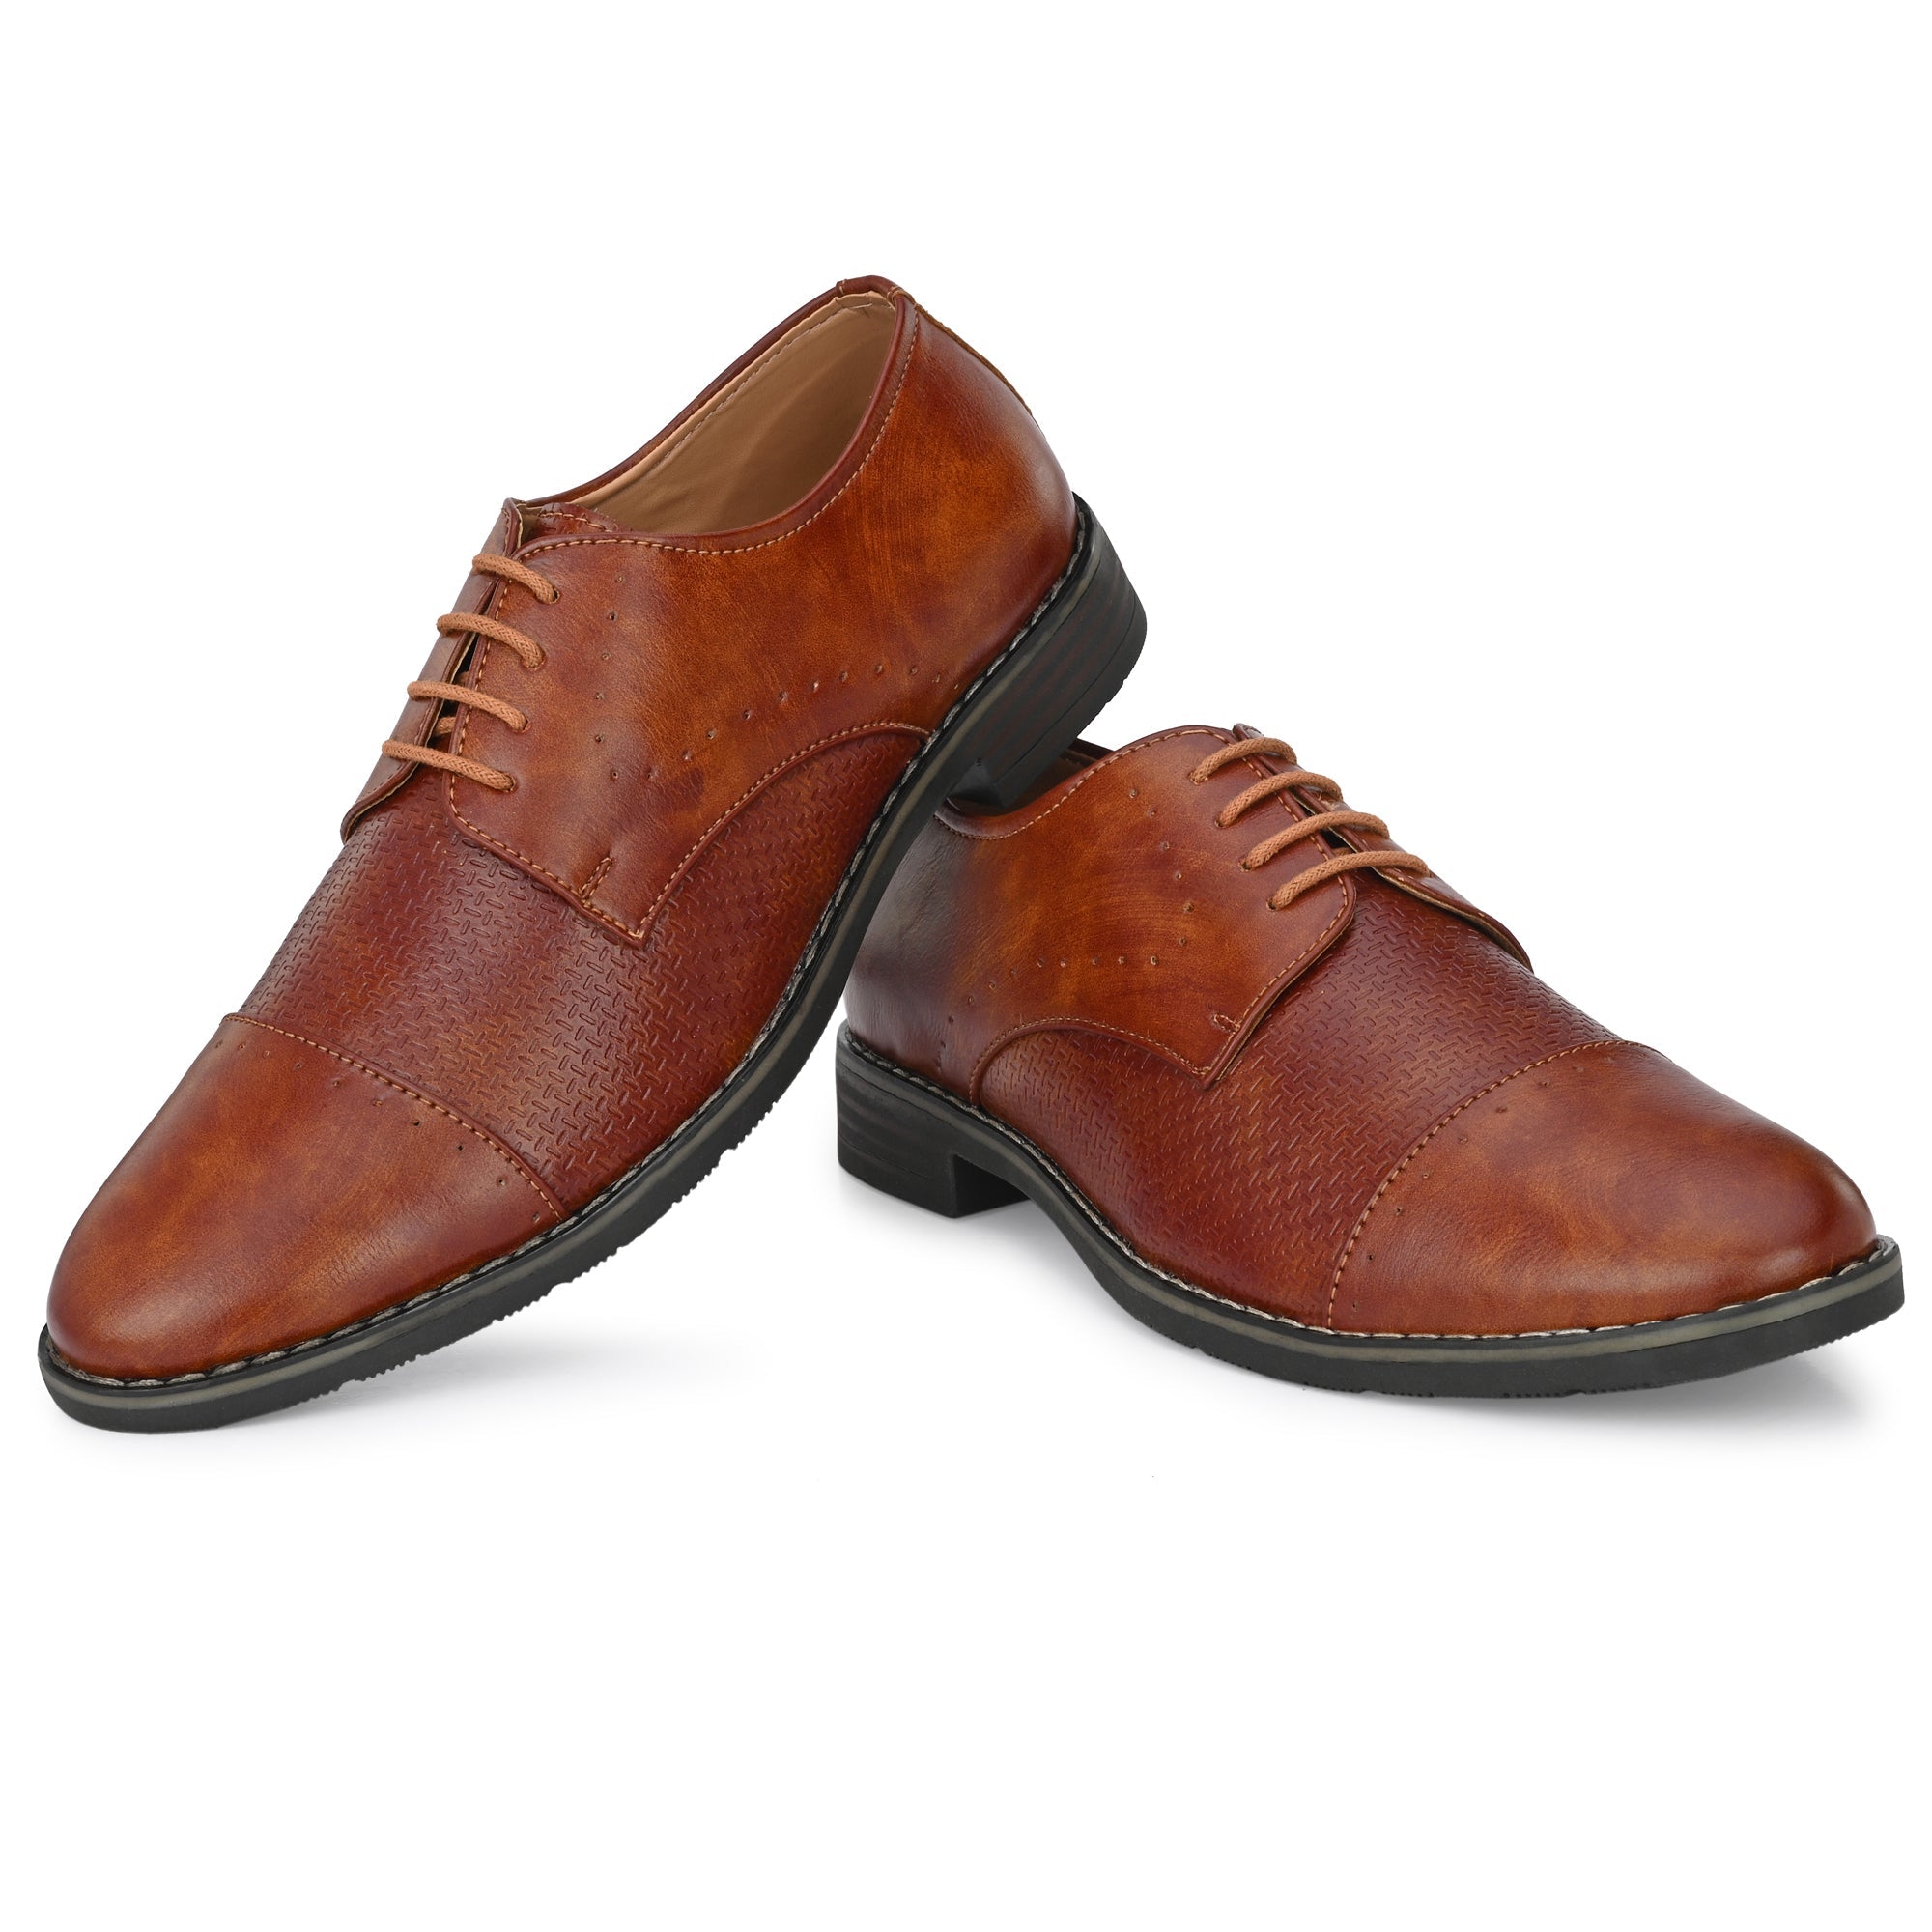 formal-lace-up-attitudist-shoes-for-men-3720tan